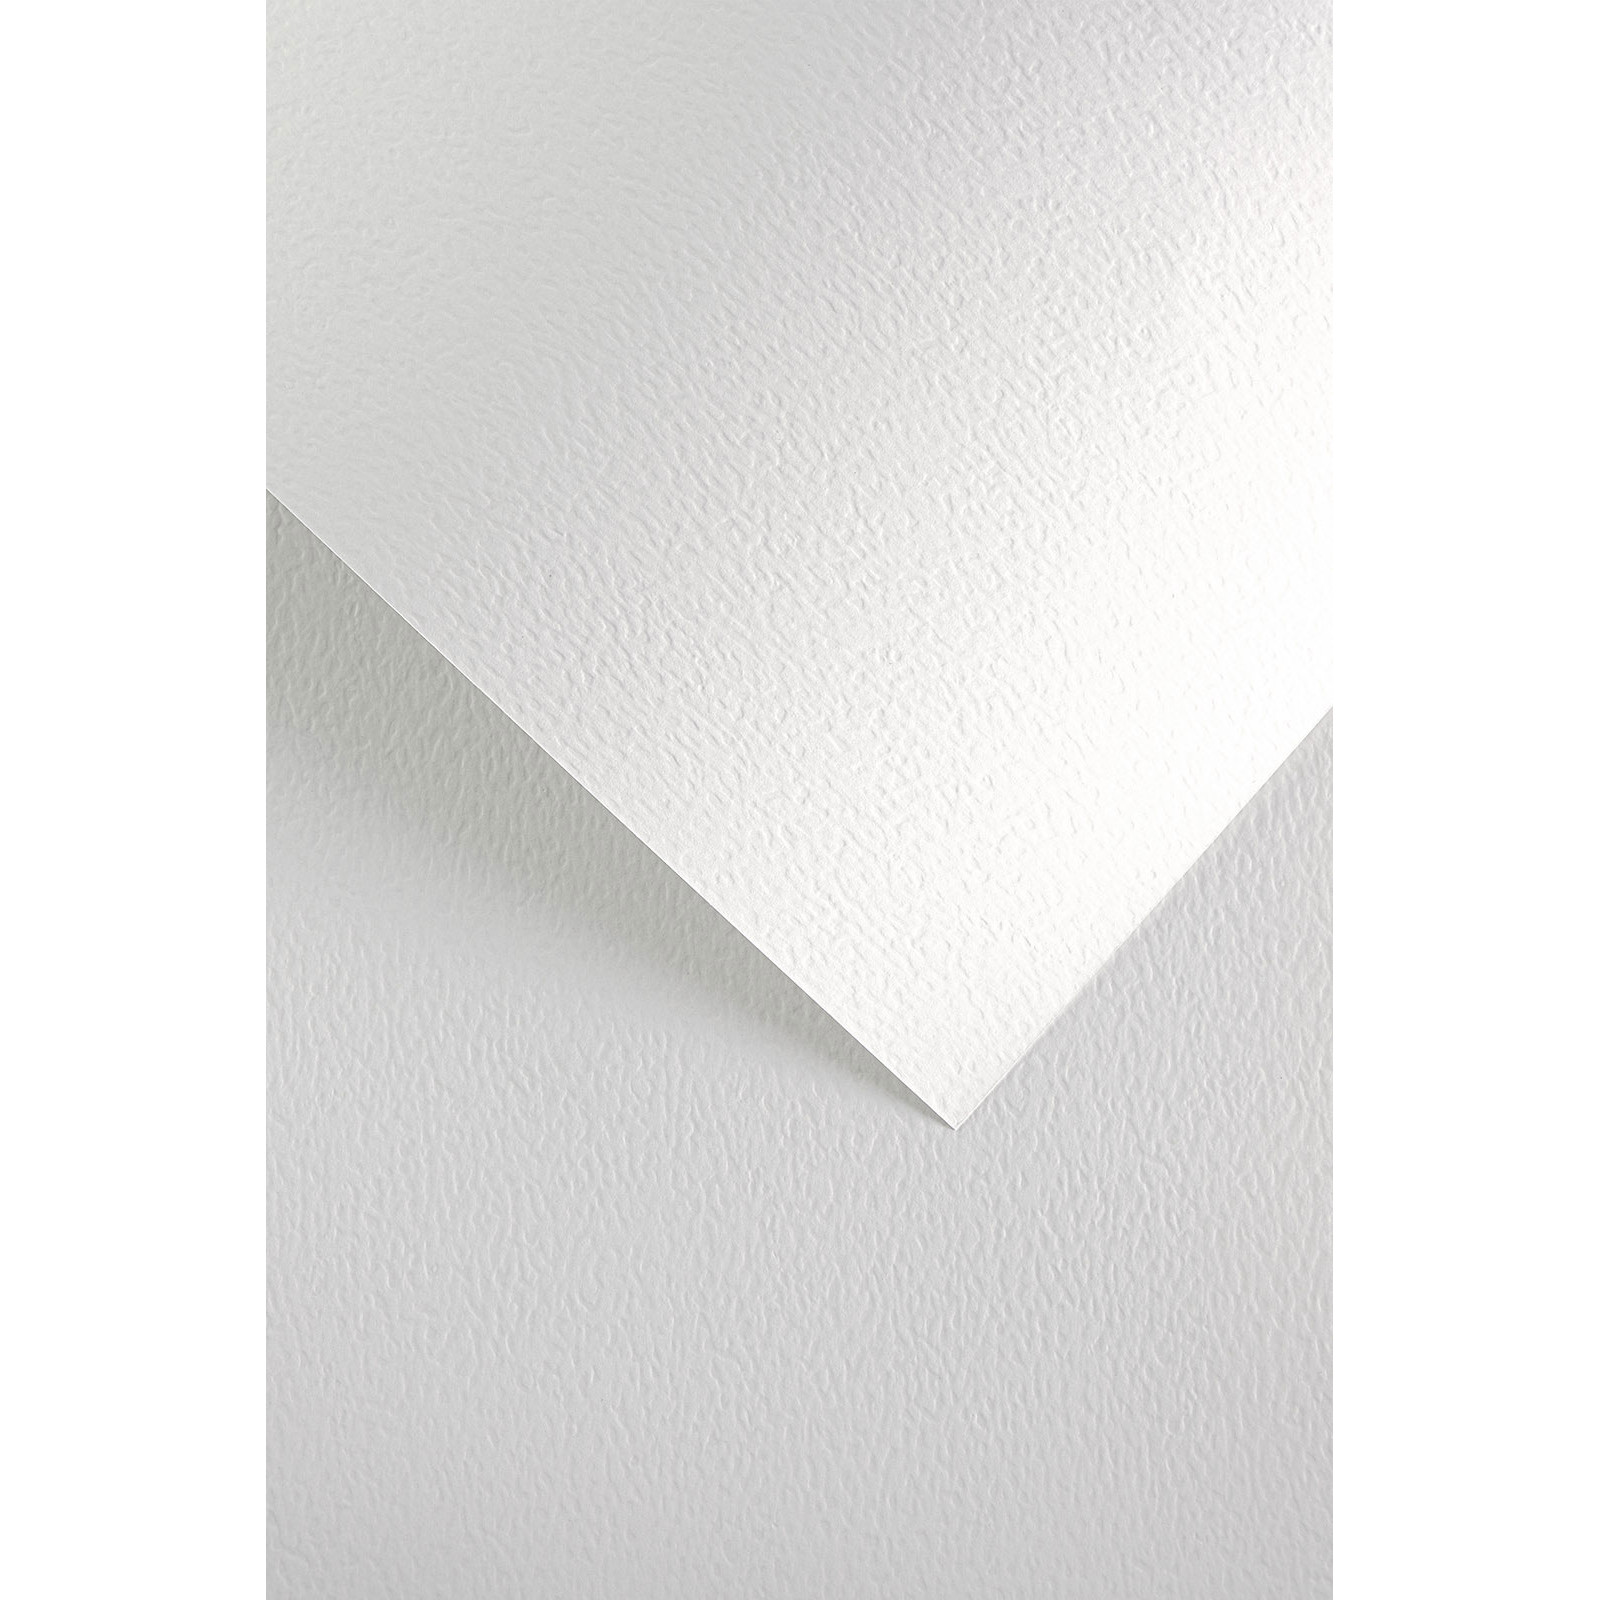 Karton papier wizytówkowy A4 Kamień biały 20 arkuszy 230 g Galeria Papieru 